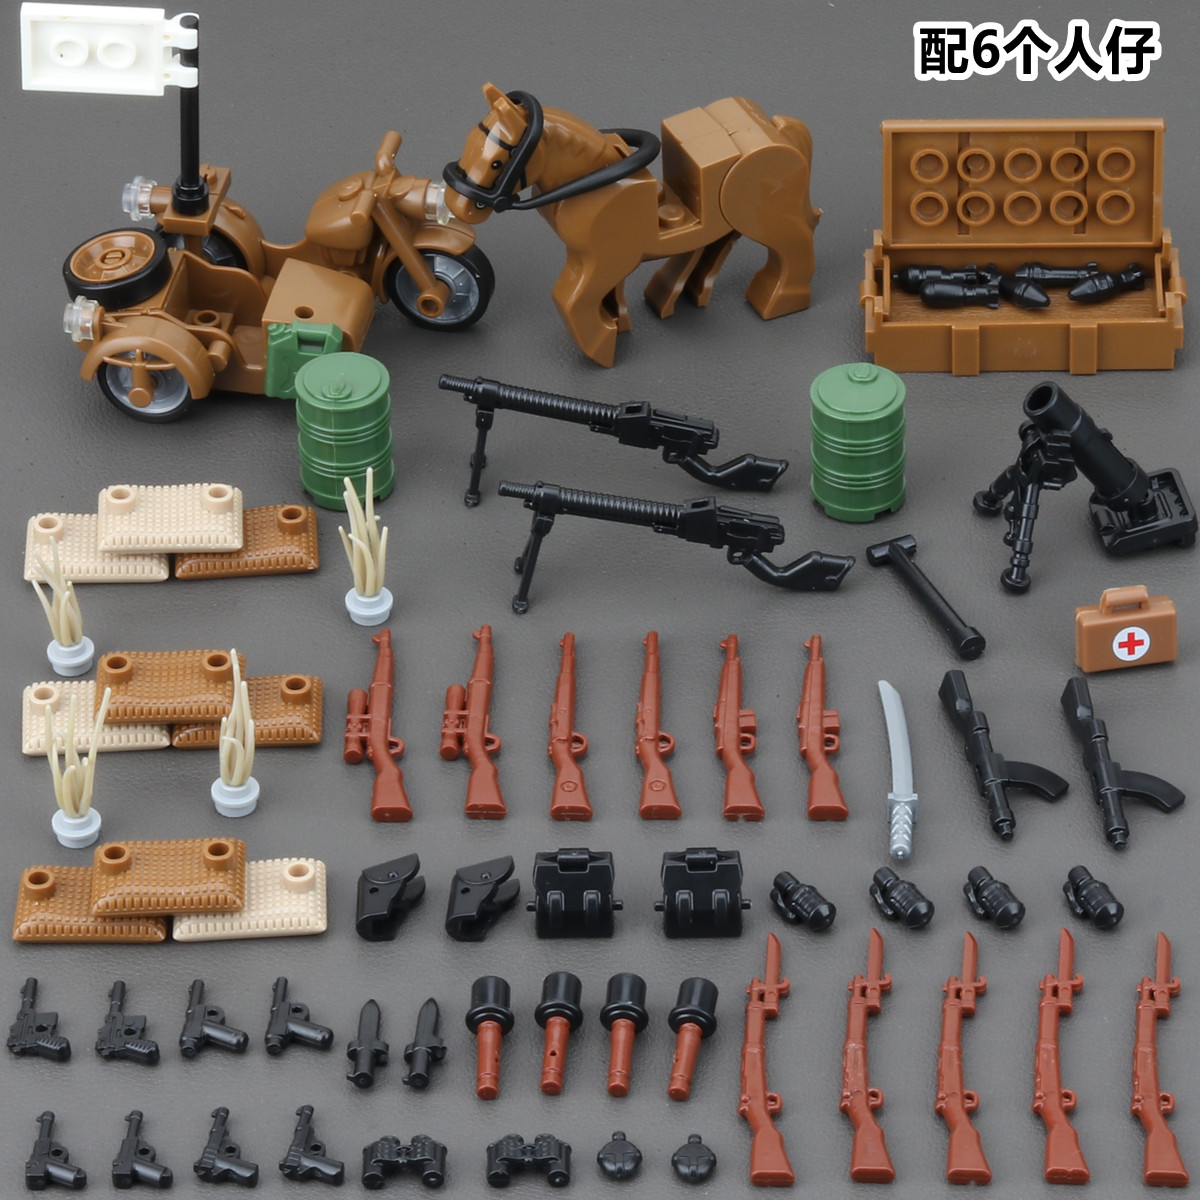 二战德军事人仔积木拼装人偶士兵乐高八路军德军装甲车模型小玩具